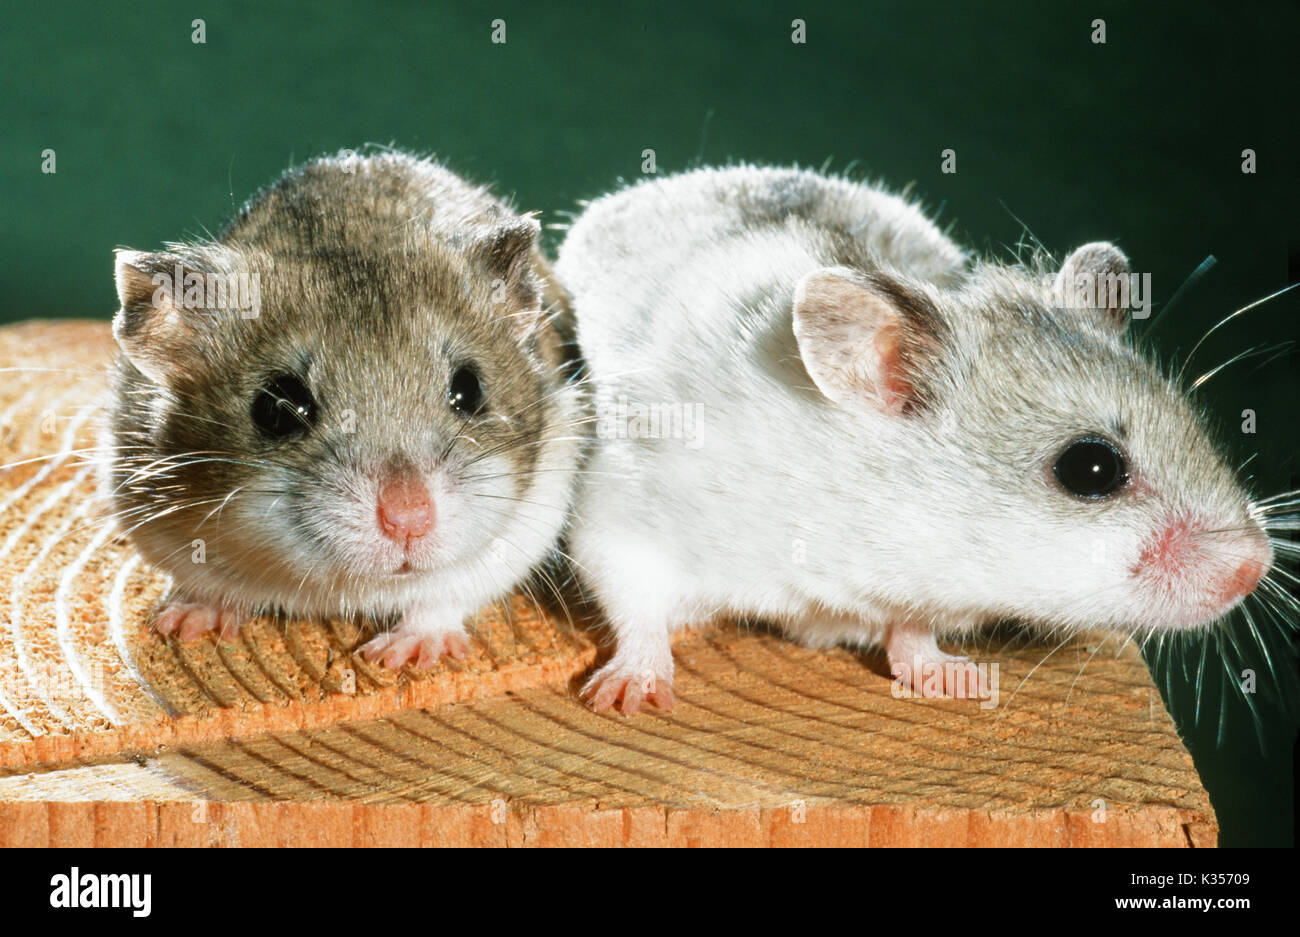 Les hamsters chinois Cricetulus barabensis griseus). Montrant la variation de couleur. Forme sauvage normal ou pelage agouti sur la gauche. Animal de compagnie et les animaux de laboratoire. Banque D'Images